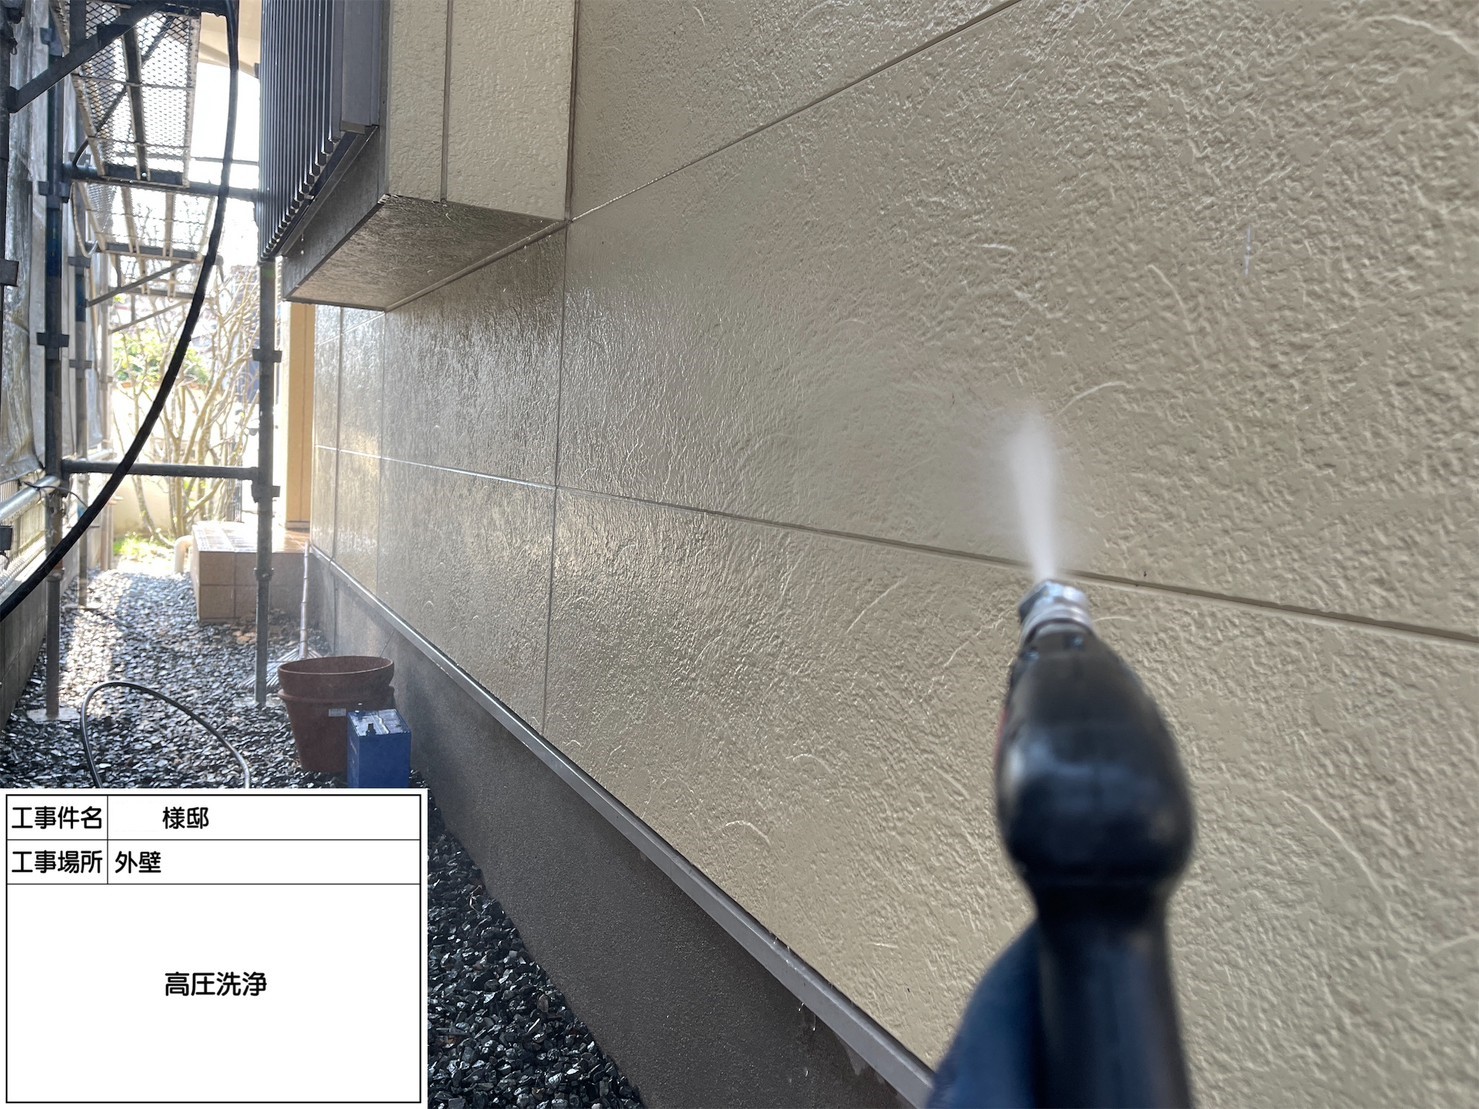 福岡県筑前町東小田のS様邸で経年劣化によりチョーキングや色褪せが発生していた外壁を塗り替えて新築の様に仕上げていきます。7/28着工です。【ホームページより】